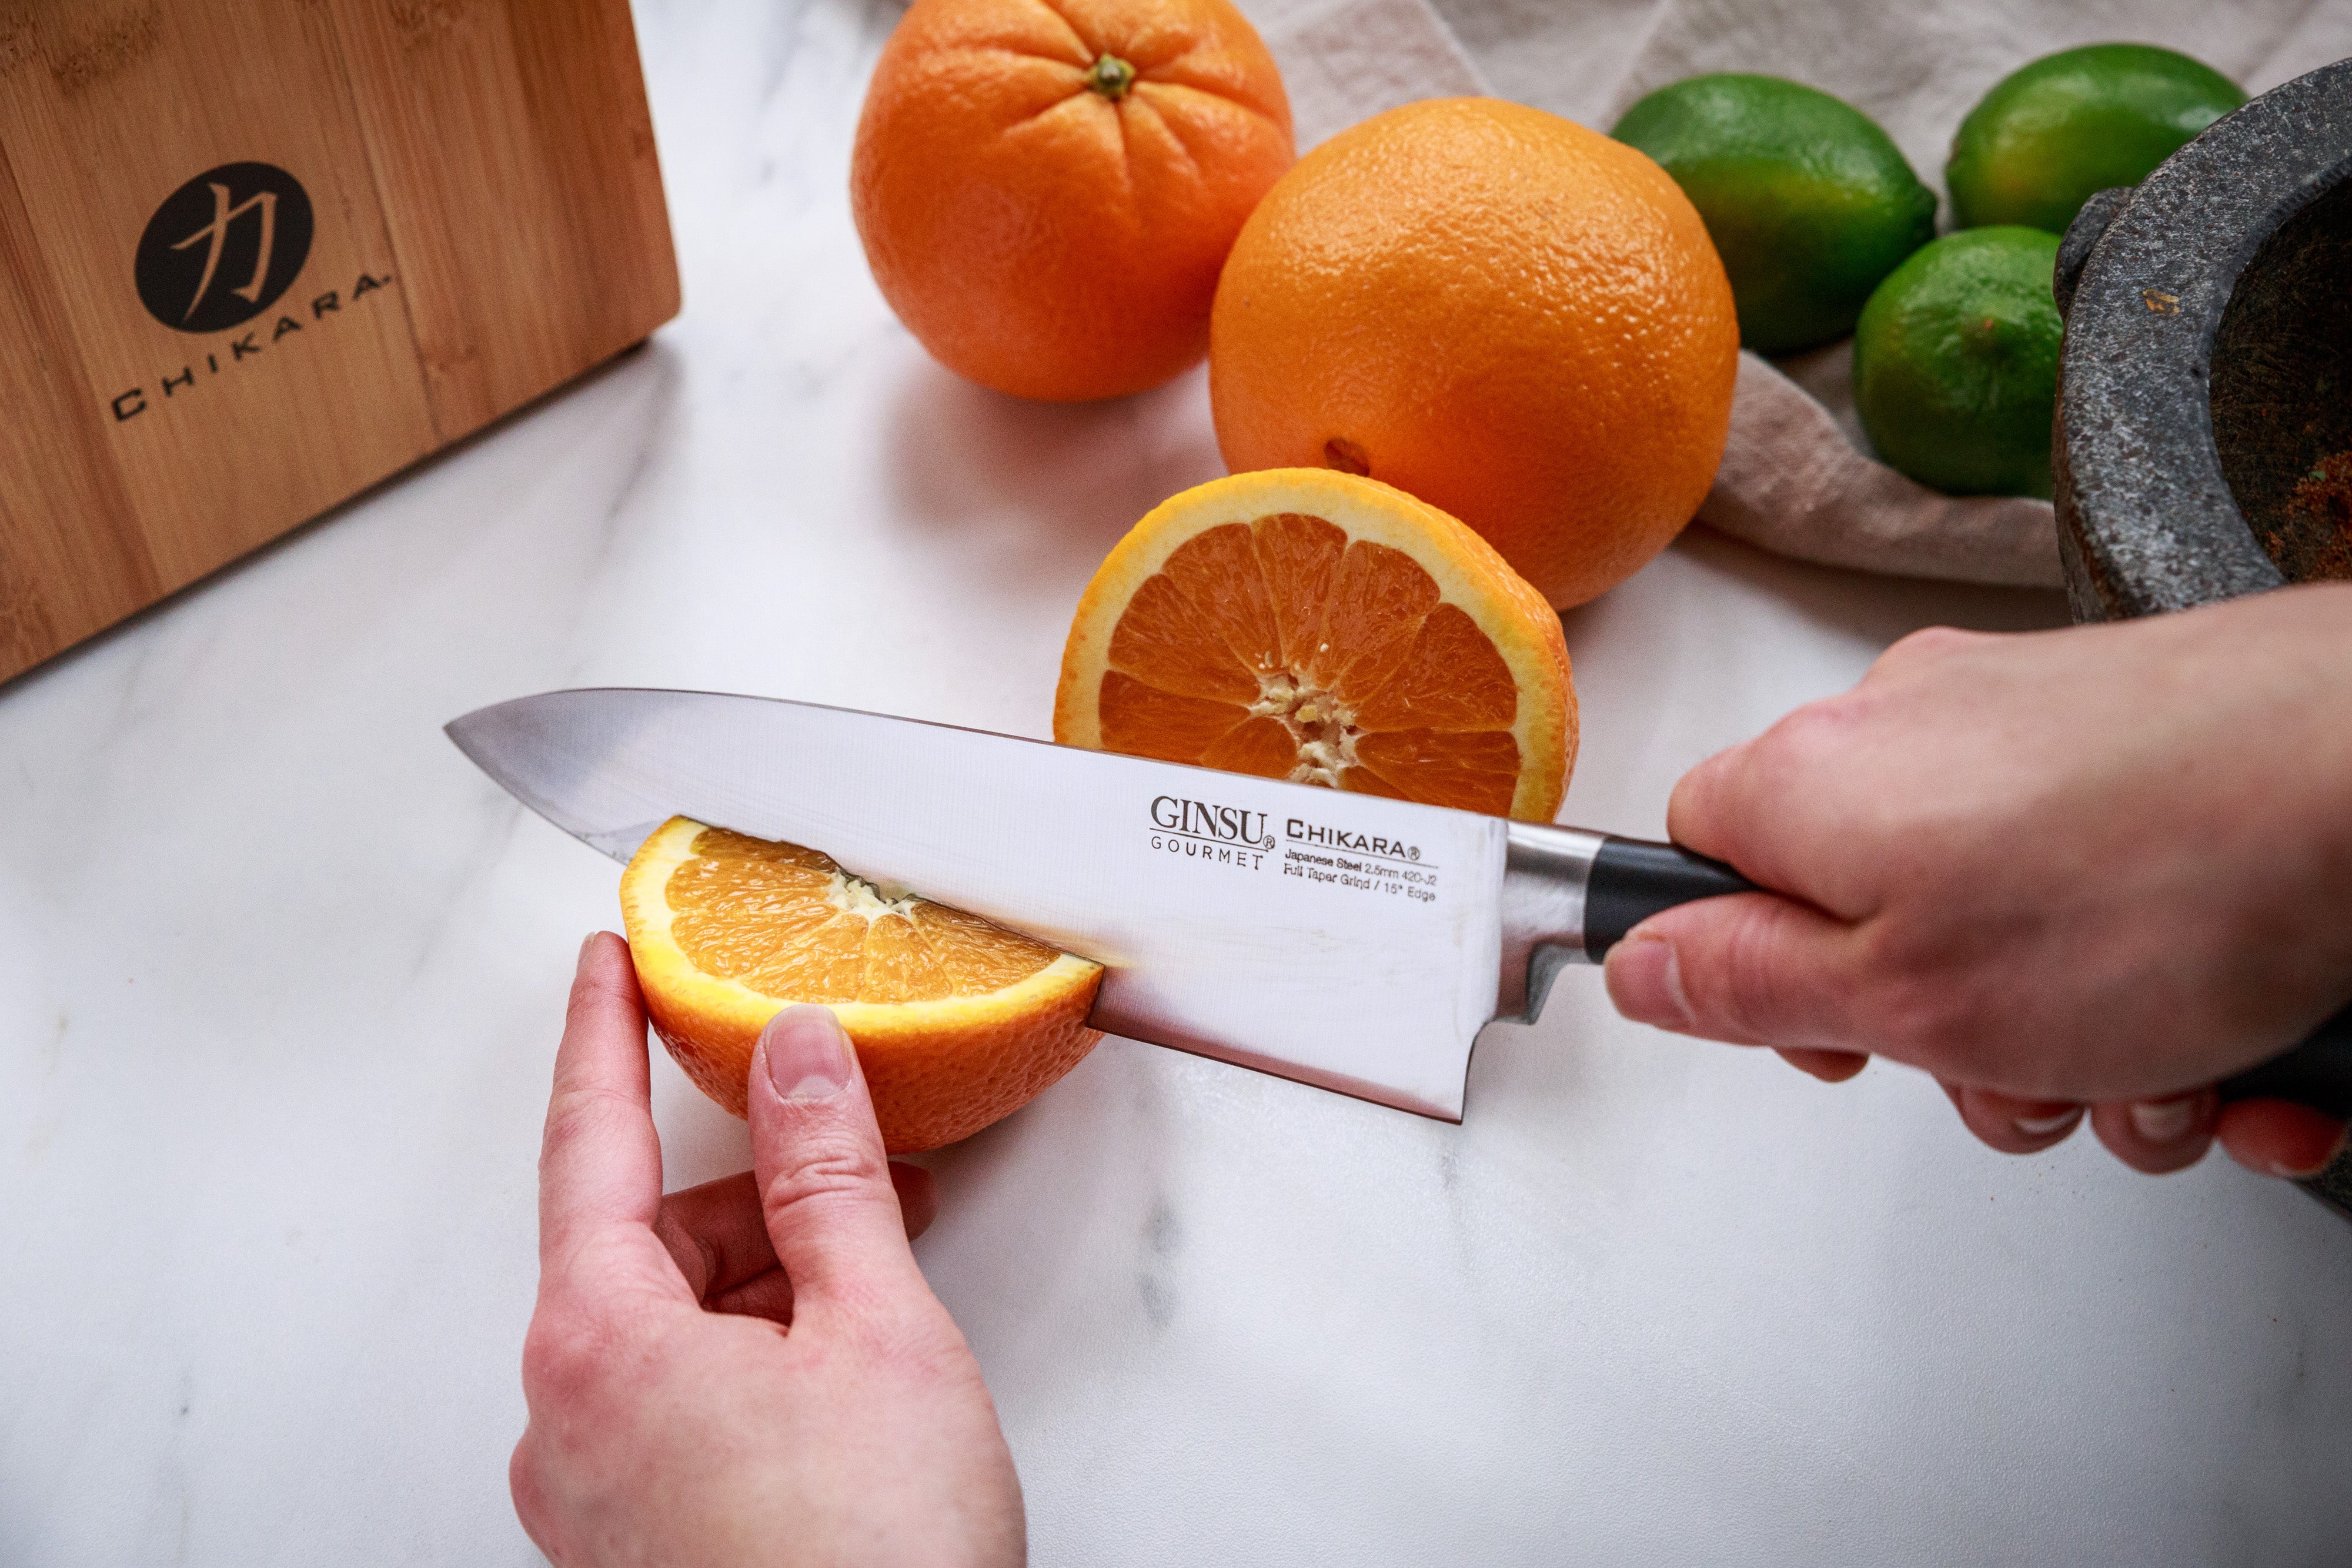 Chikara Series: 8 Chef's Knife – Ginsu